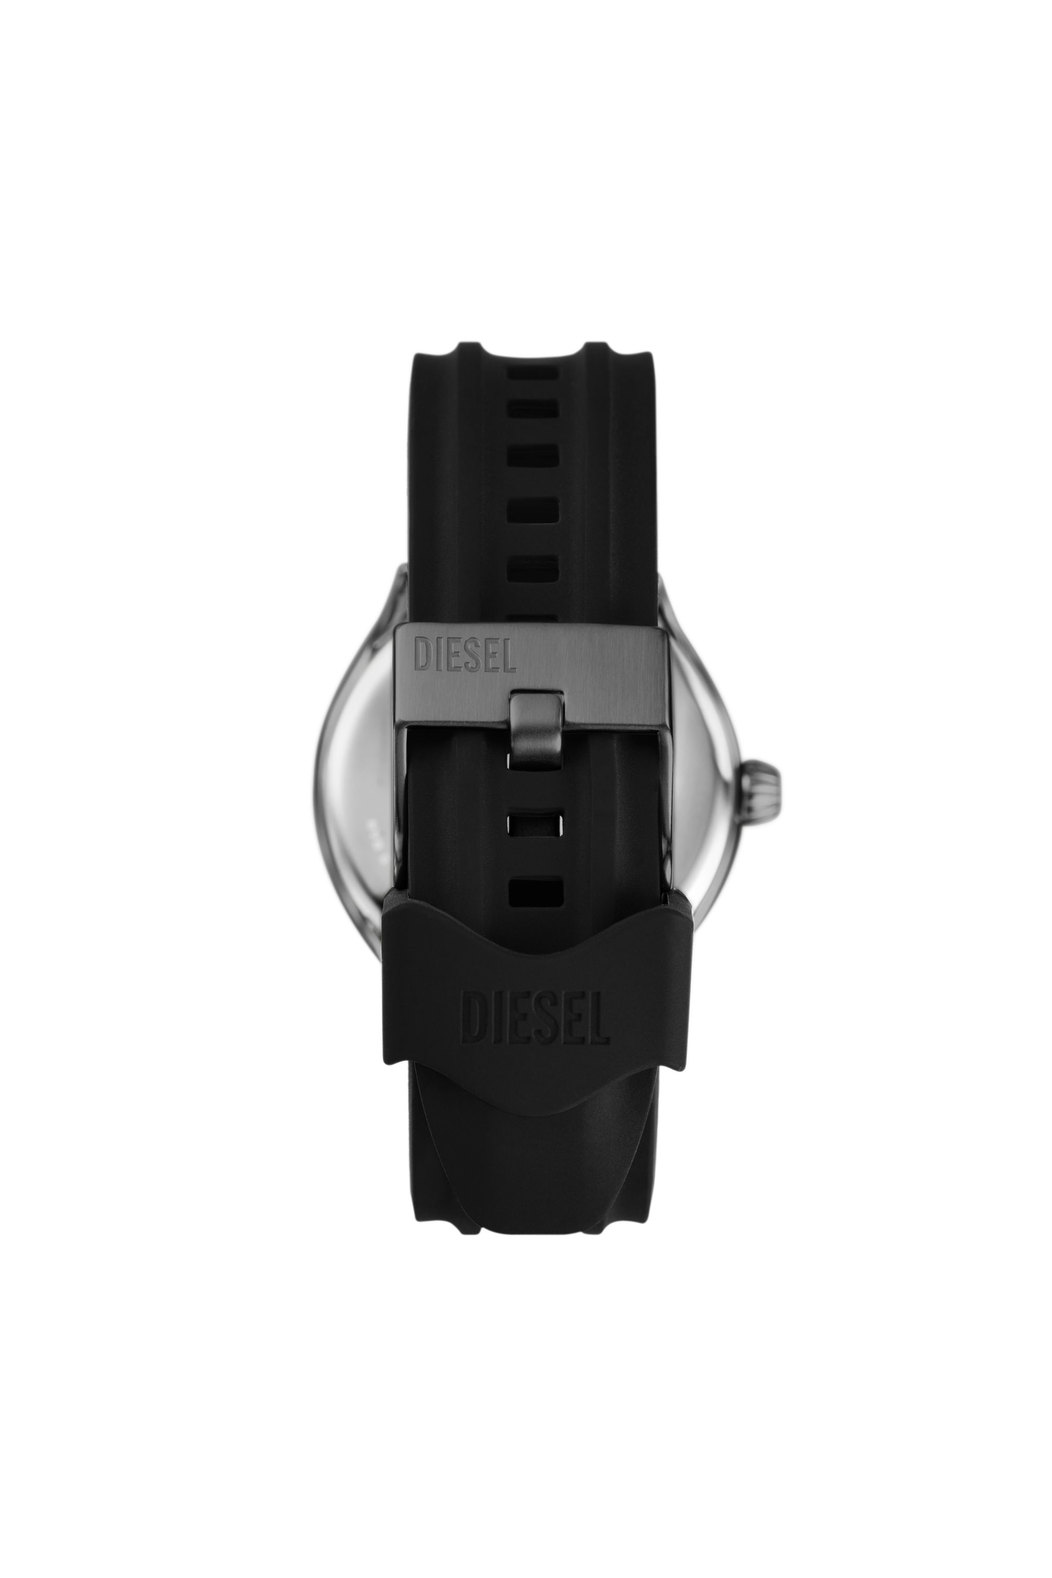 Diesel Streamline Three-Hand Black Silicone Watch